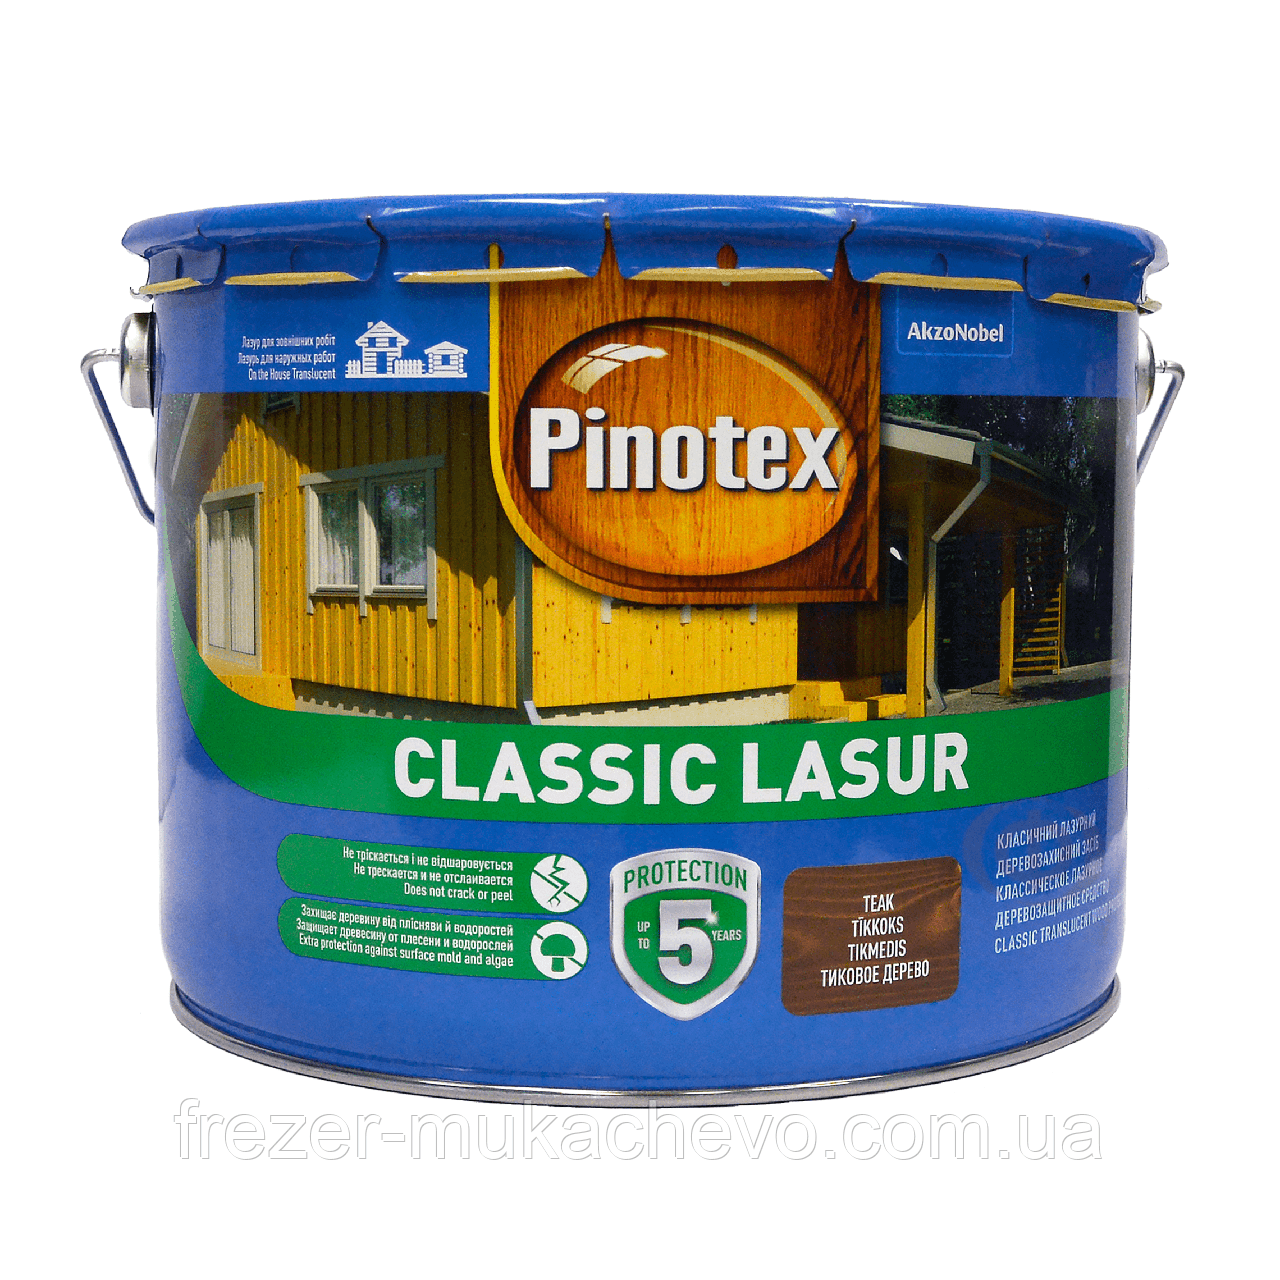 Pinotex Classic безбарвний 10 л